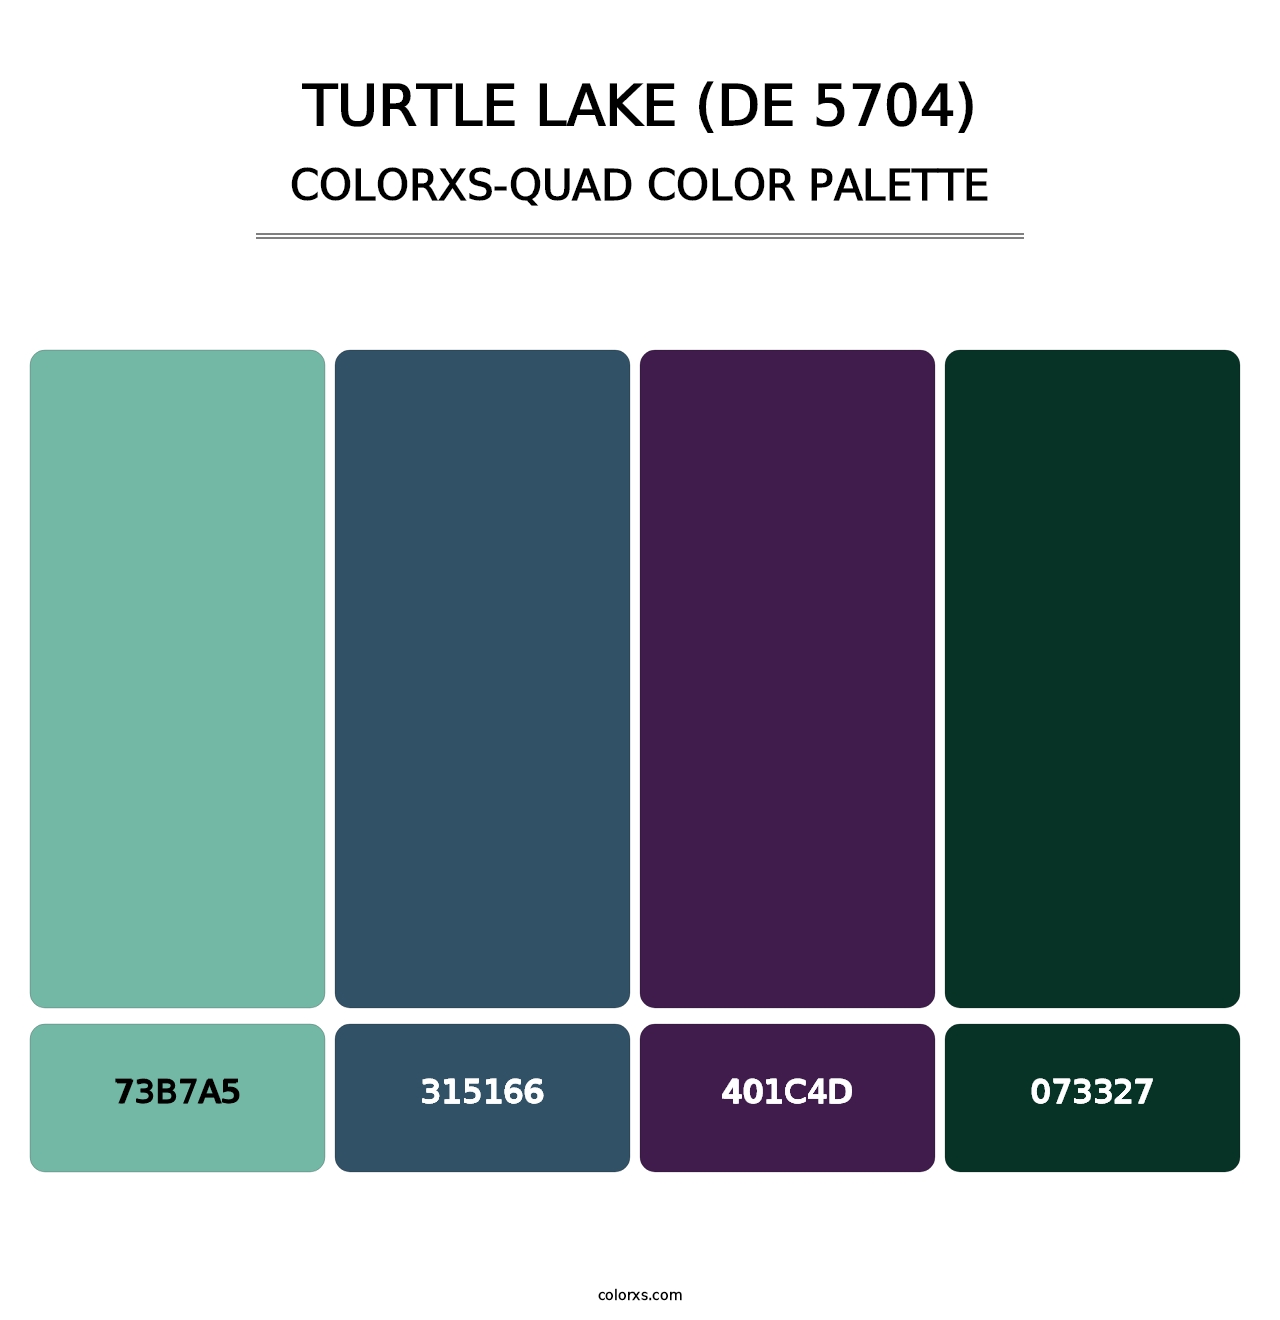 Turtle Lake (DE 5704) - Colorxs Quad Palette